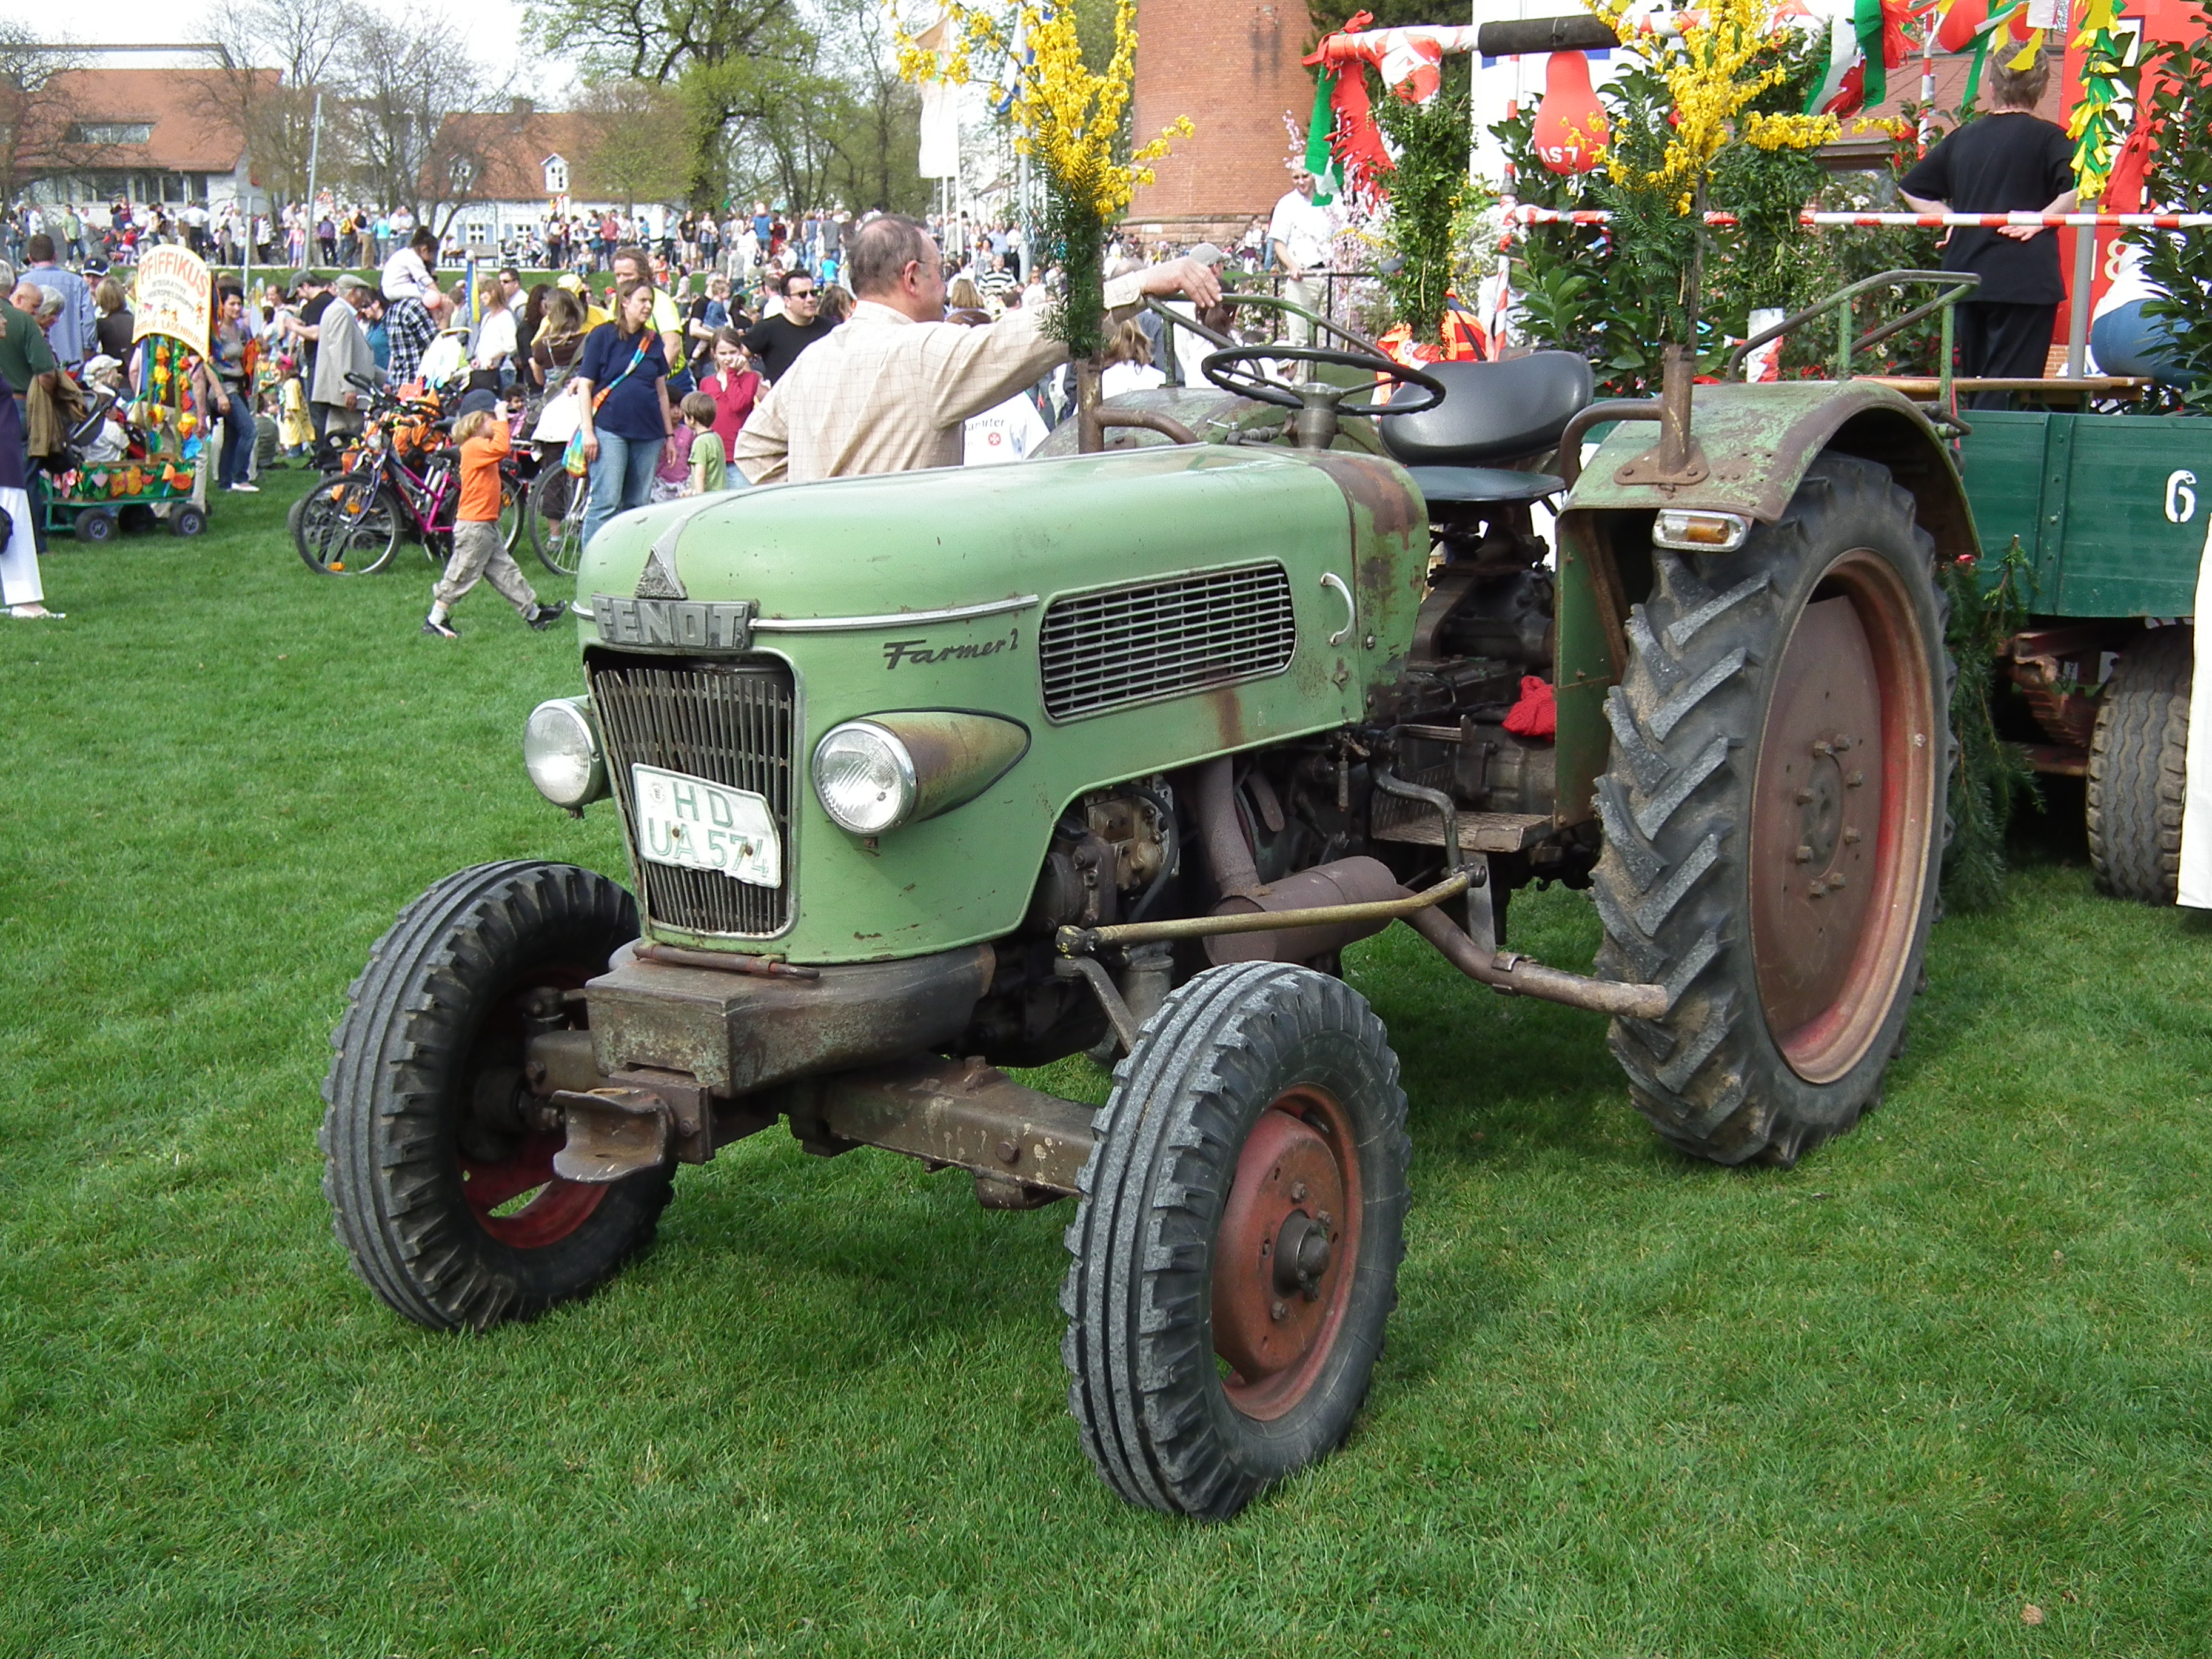 File:Fendt Farmer 2 Traktor Ladenburg.JPG - Wikimedia Commons